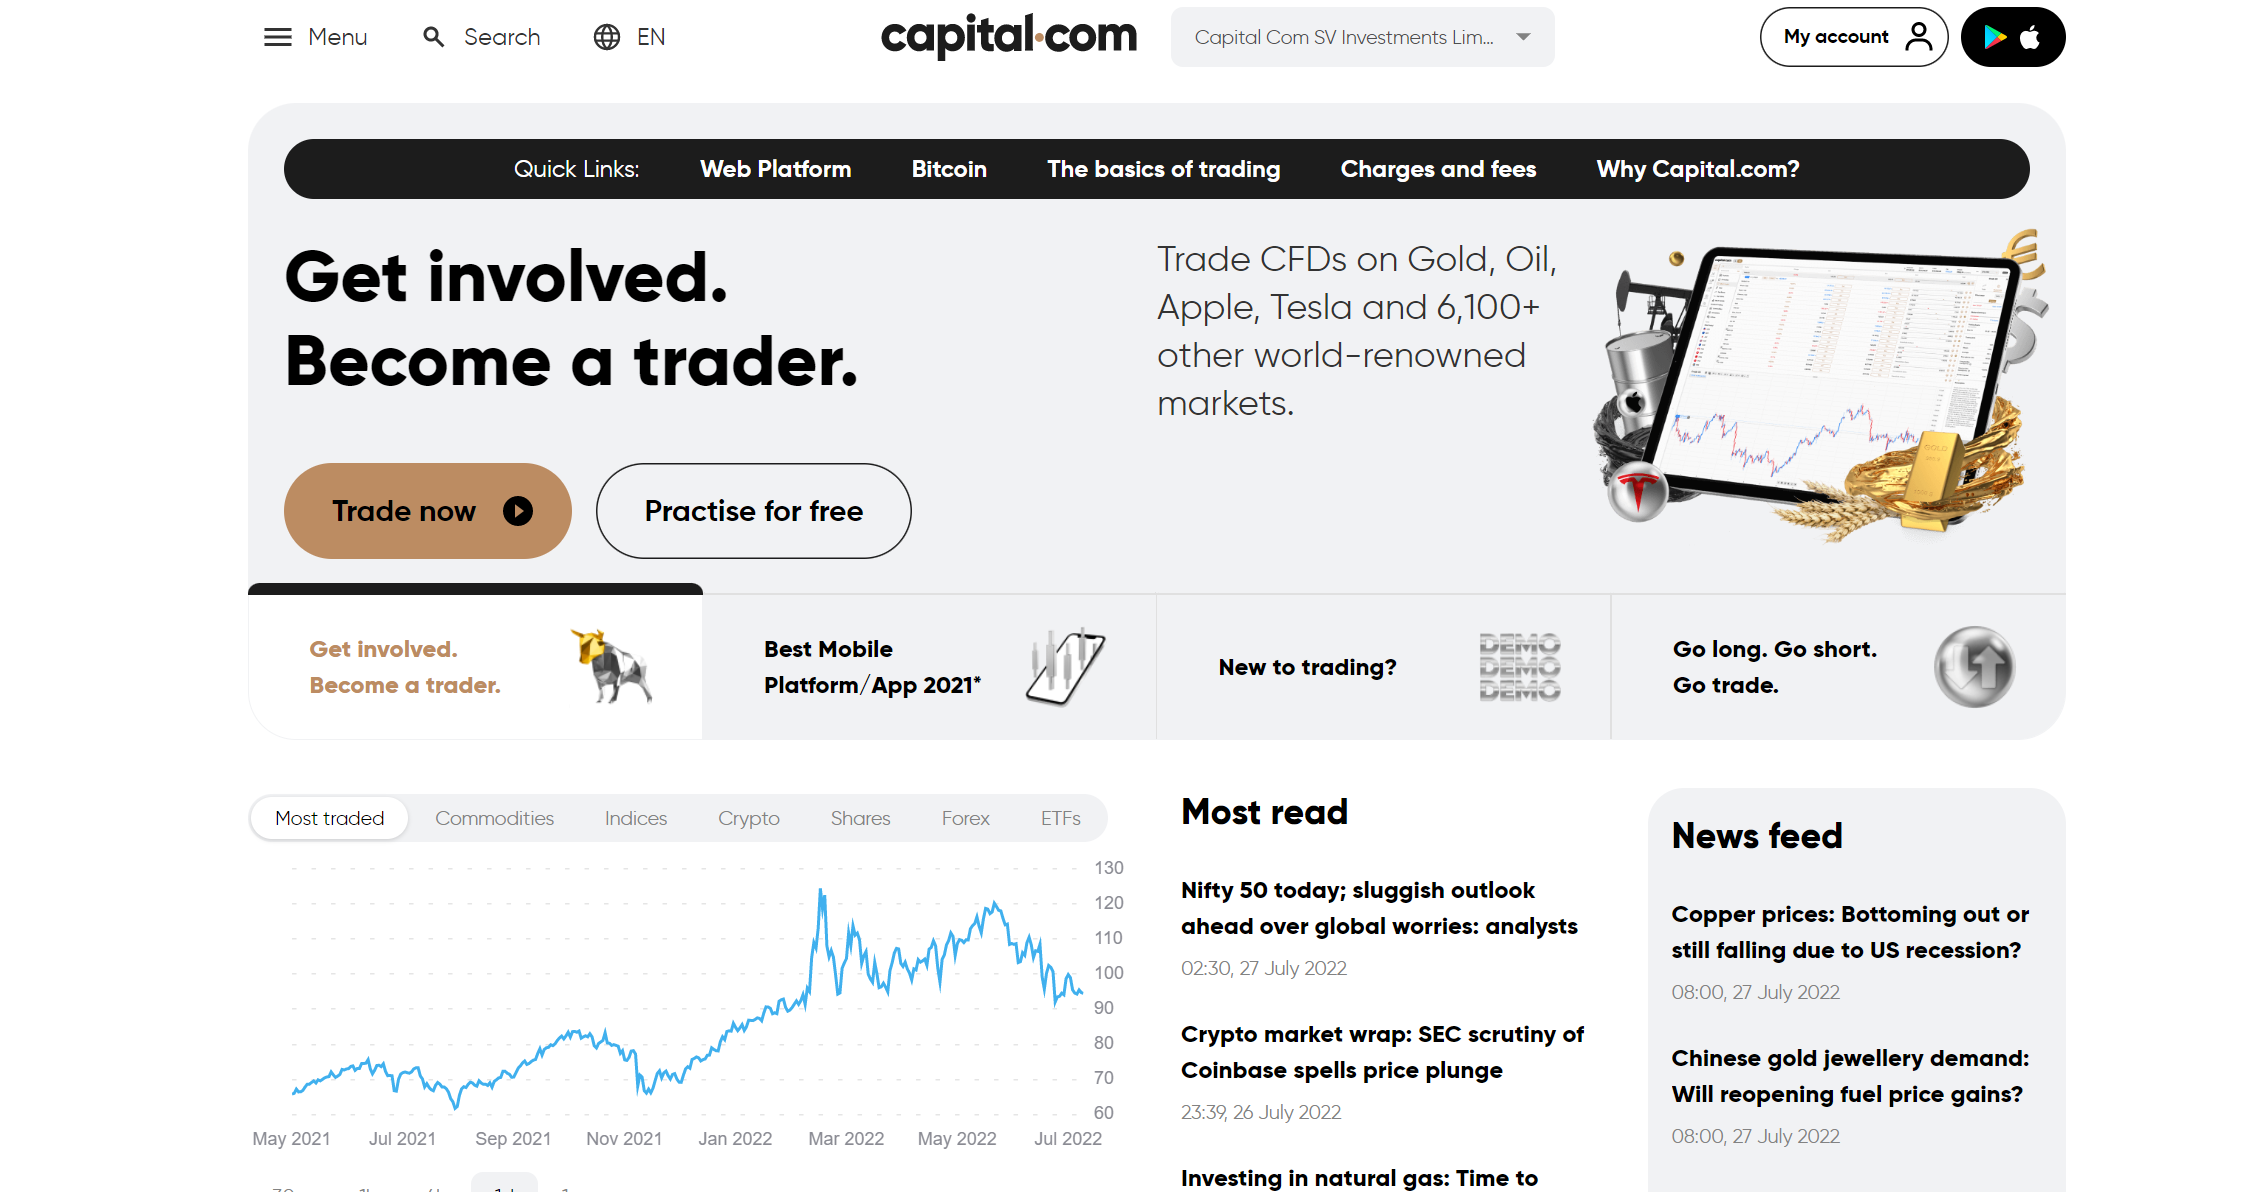 Official capital.com website